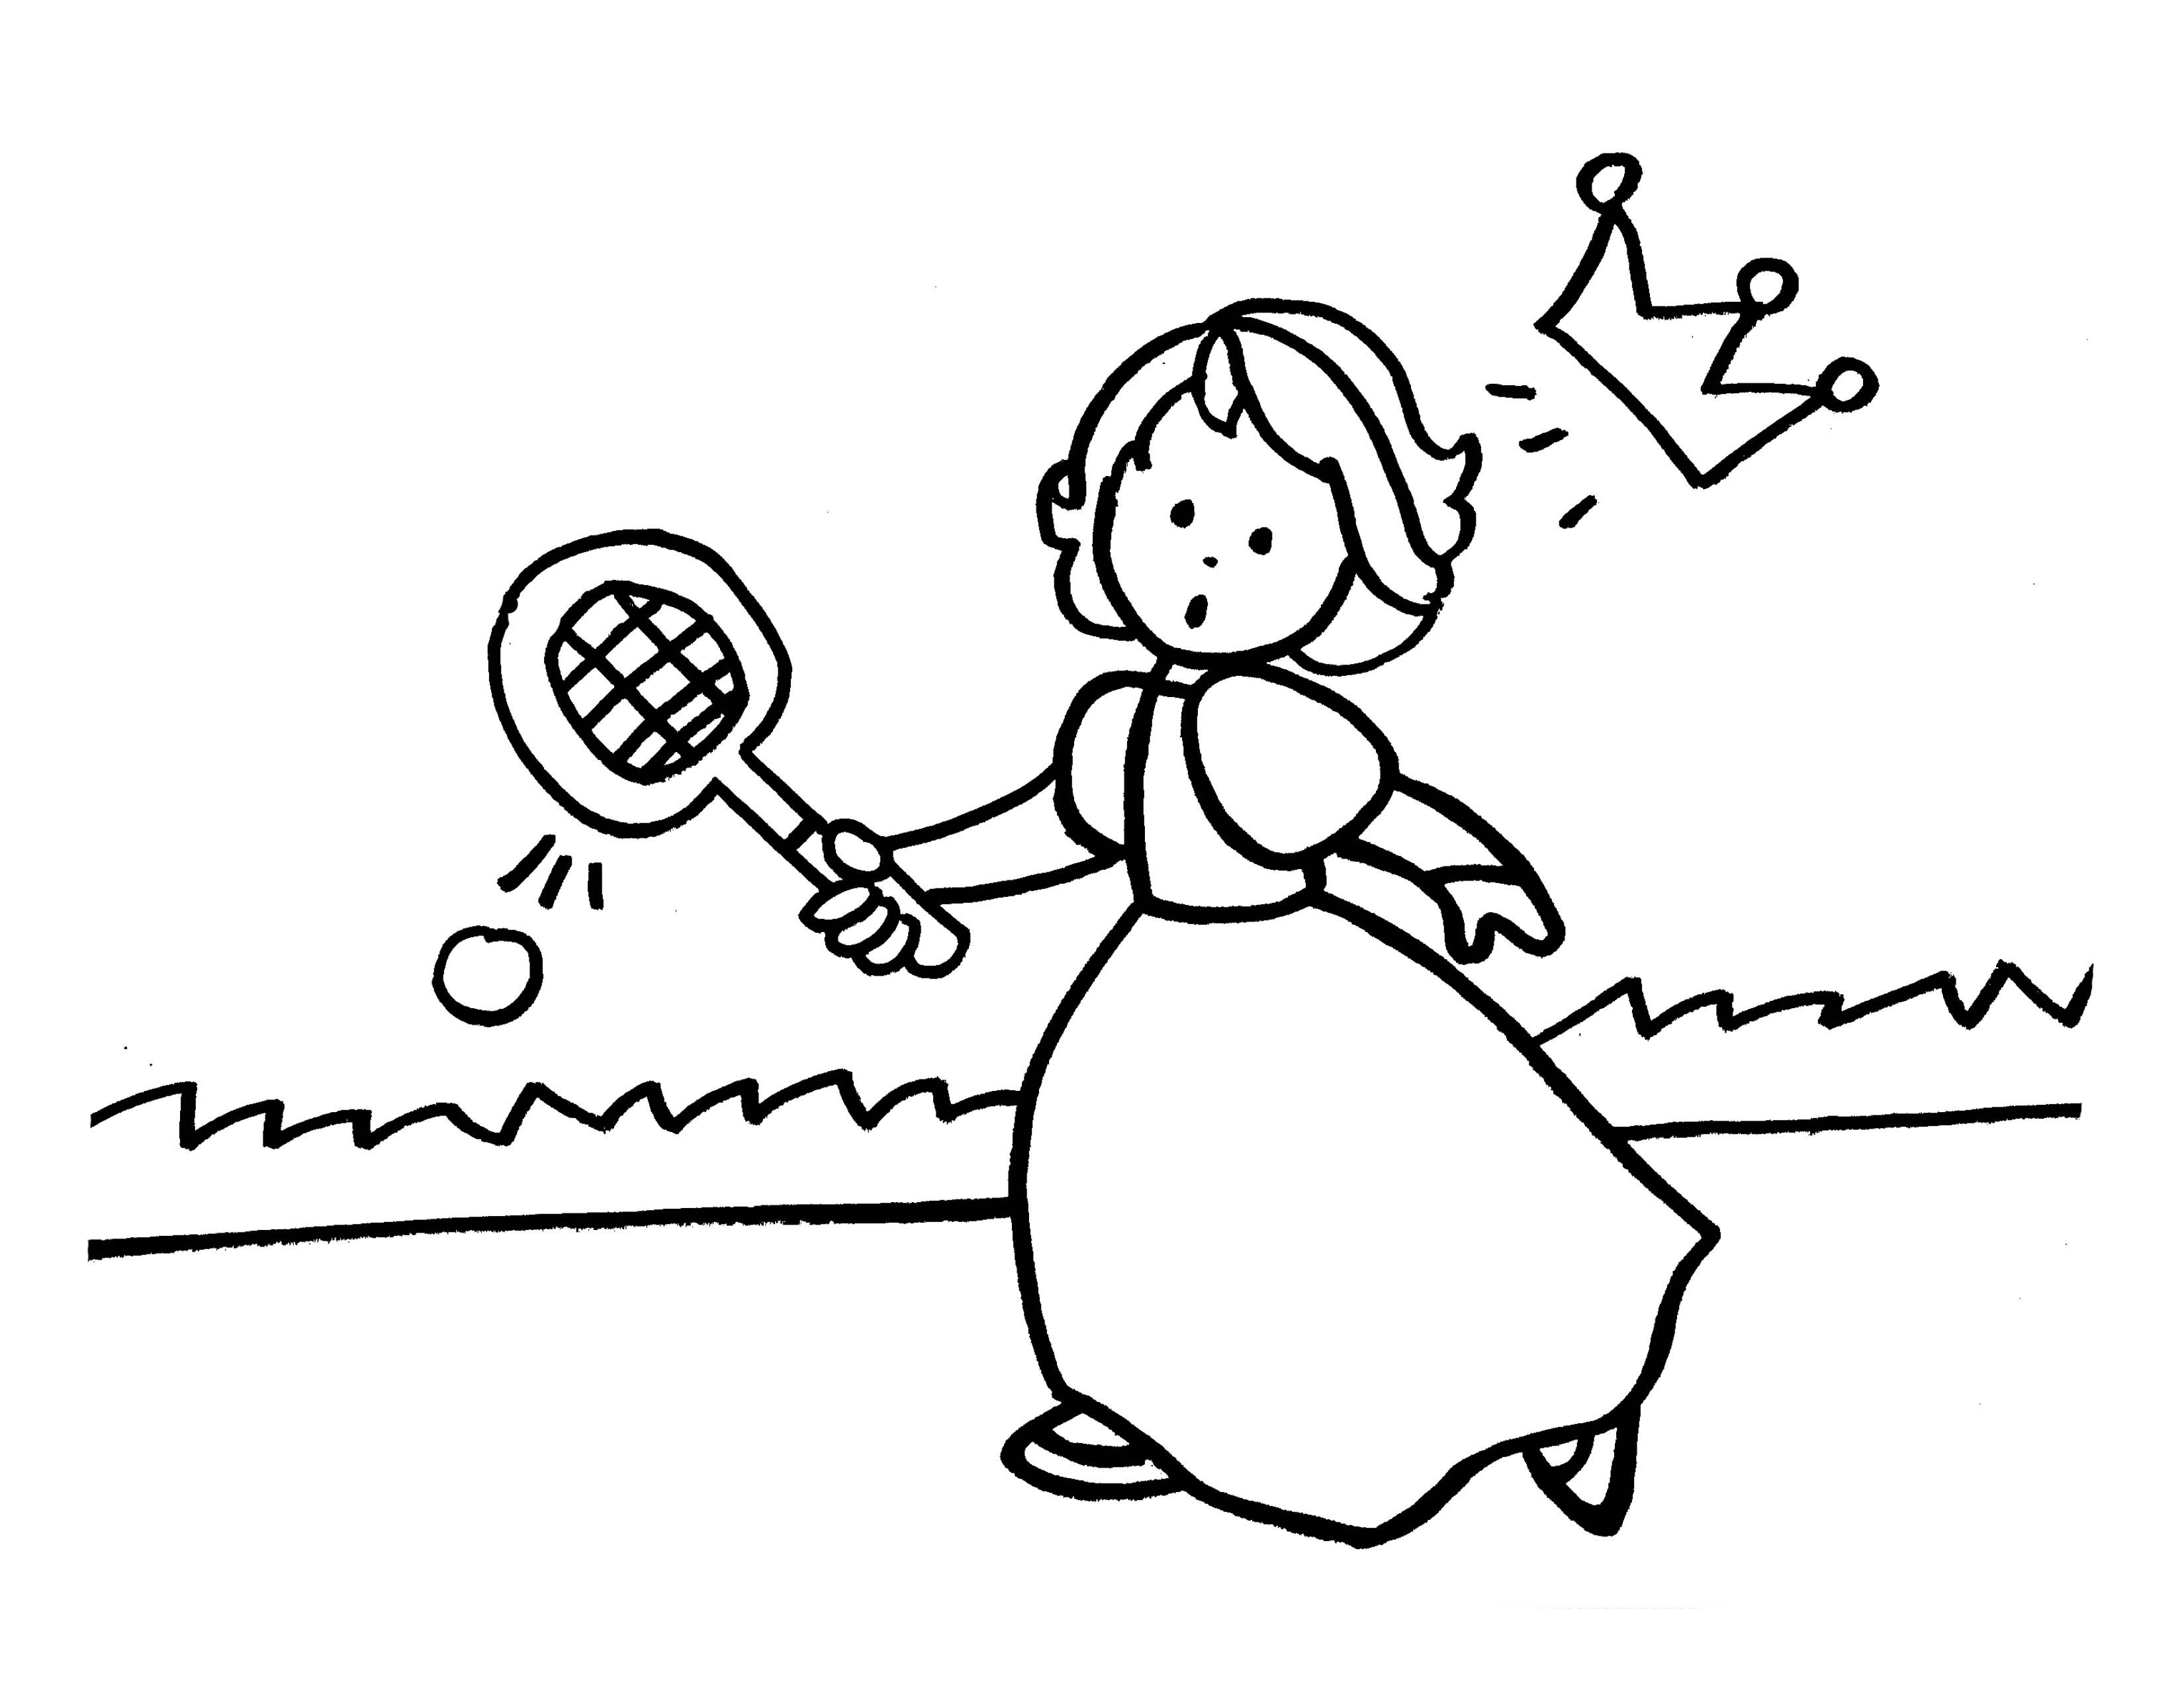 Princesa jogando tenis